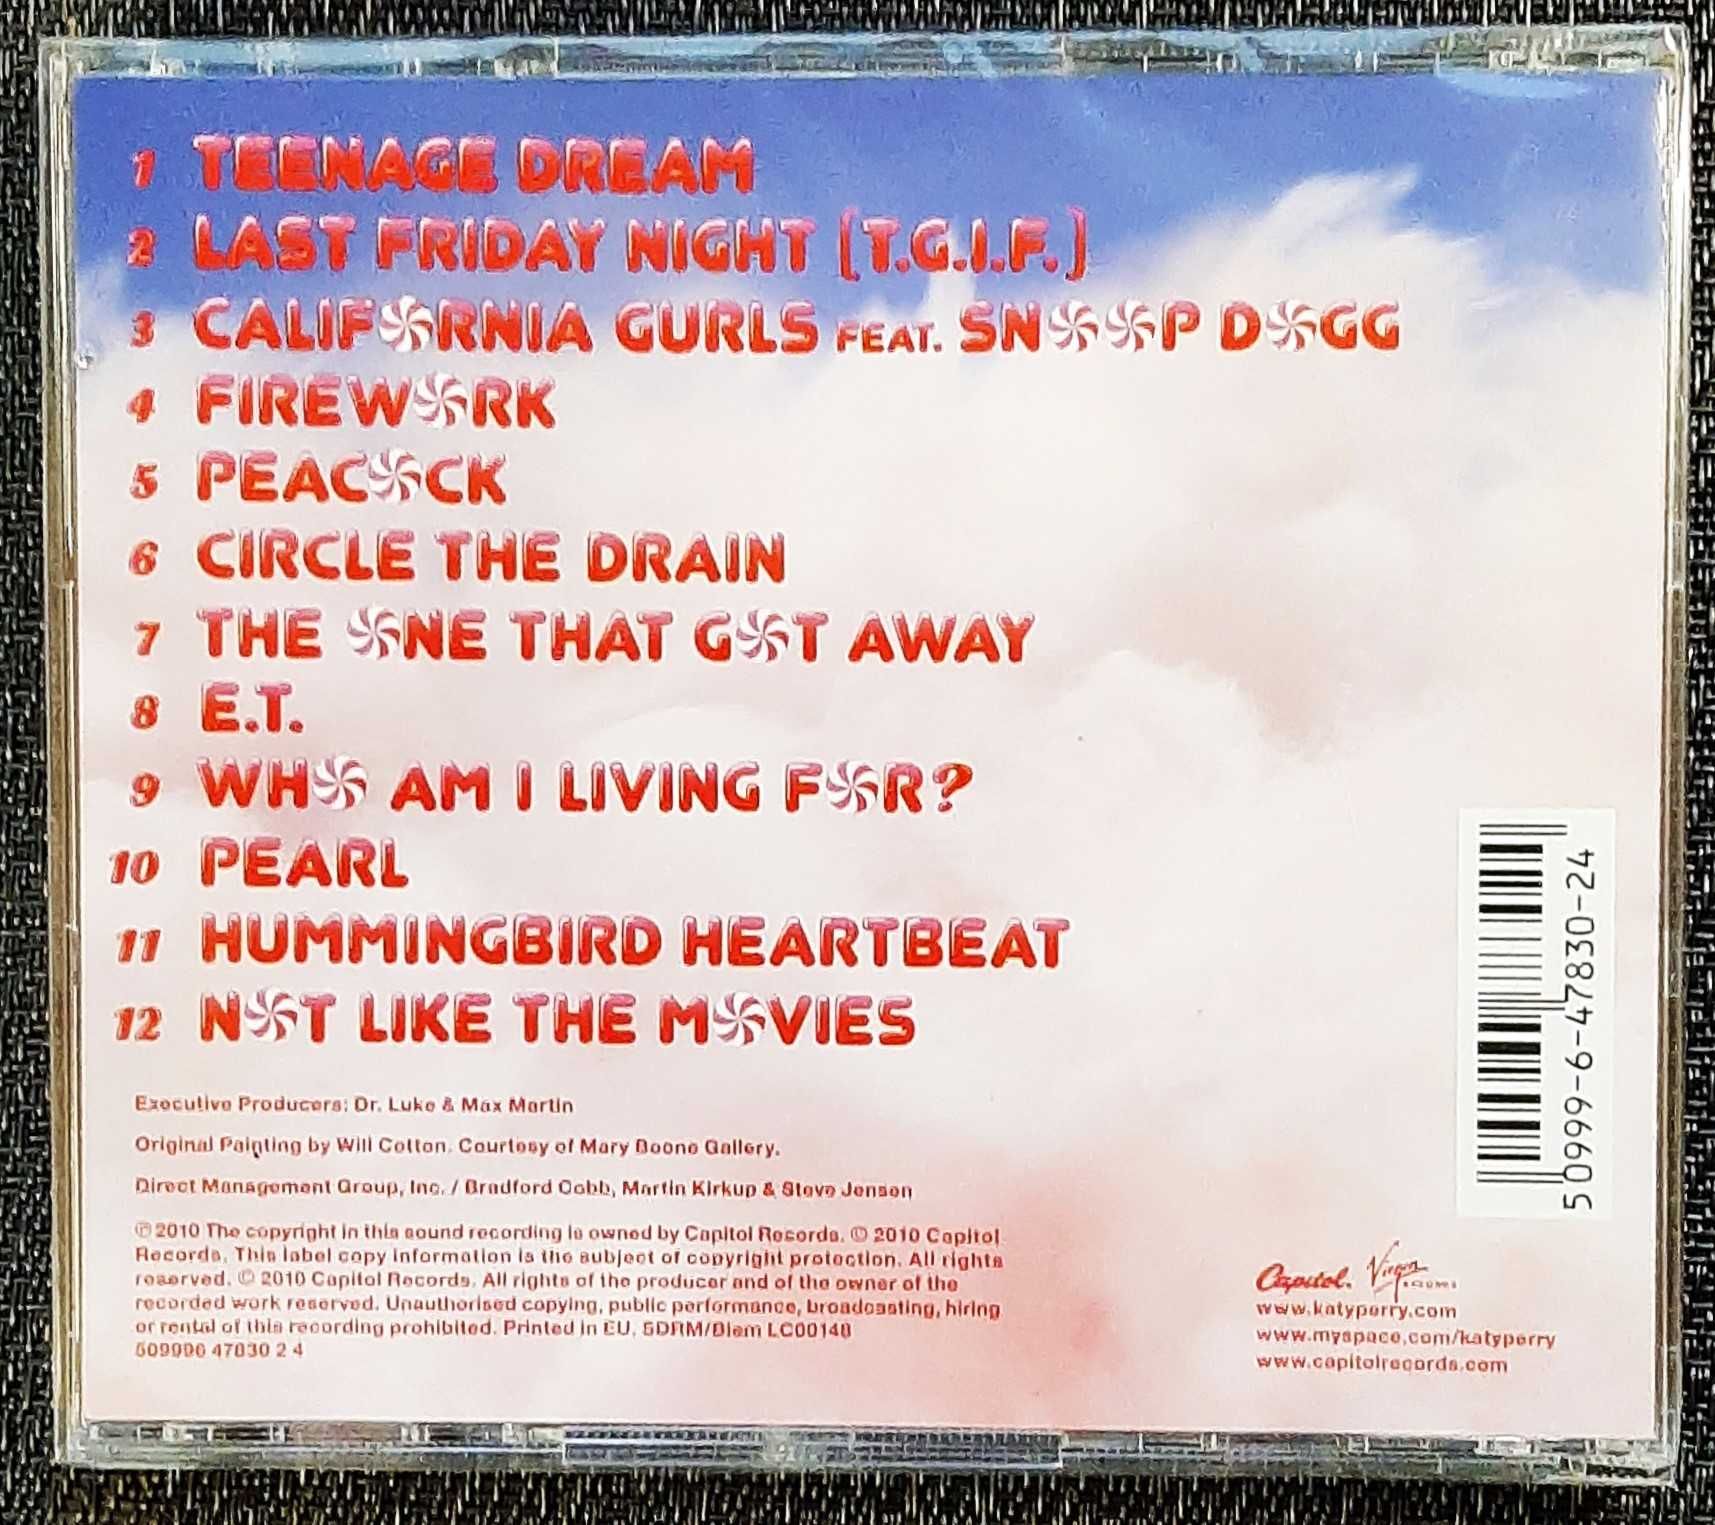 Polecam wspaniały Album CD KATY PERRY-Album  Teenage Dream